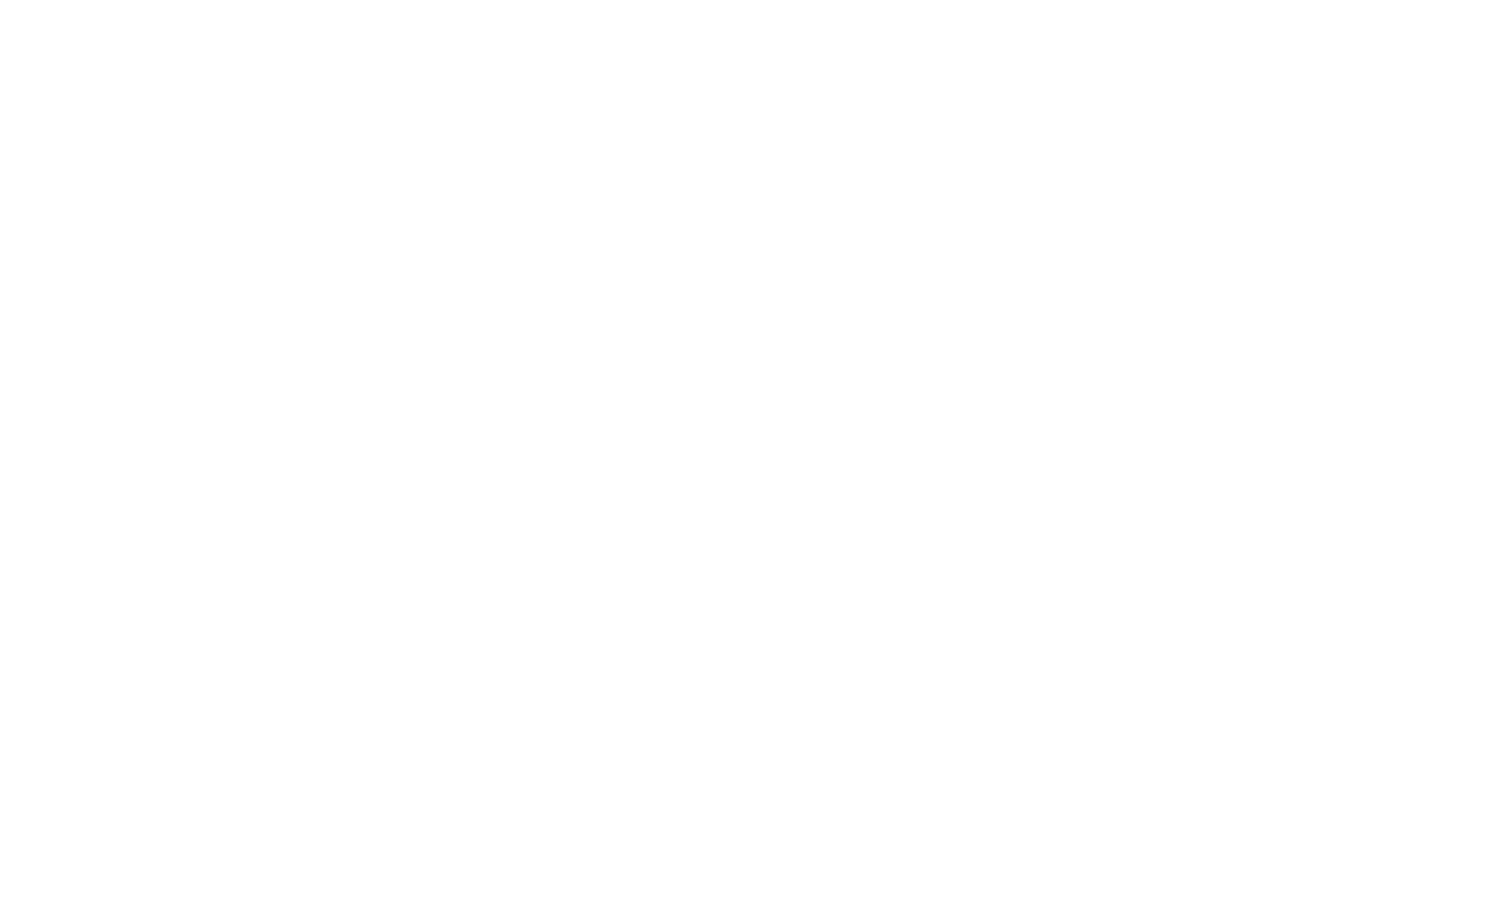 Carlson's Fish